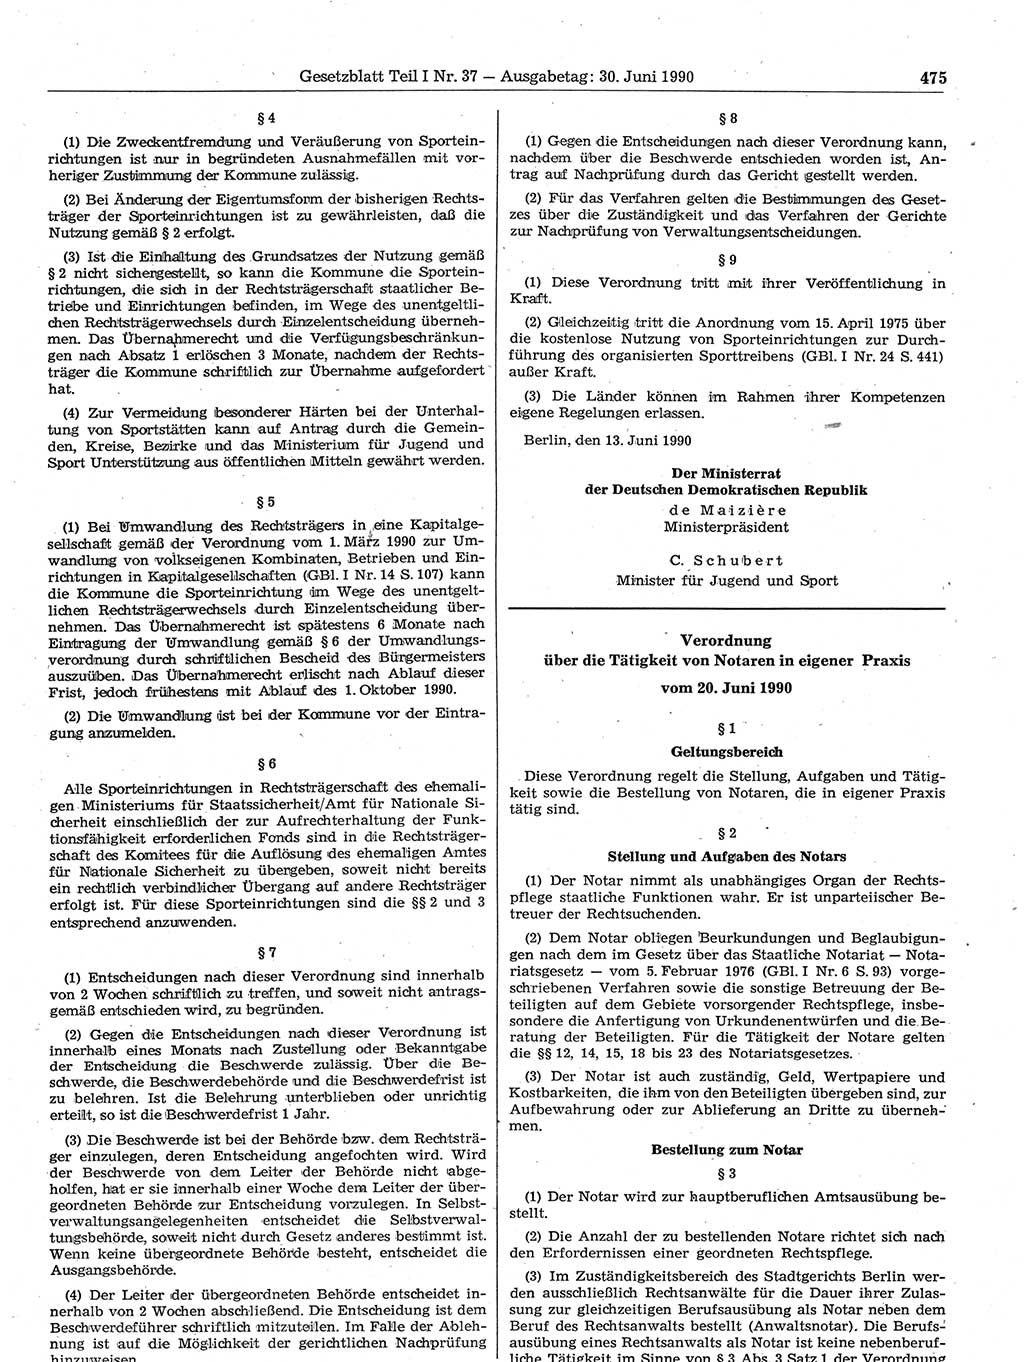 Gesetzblatt (GBl.) der Deutschen Demokratischen Republik (DDR) Teil Ⅰ 1990, Seite 475 (GBl. DDR Ⅰ 1990, S. 475)